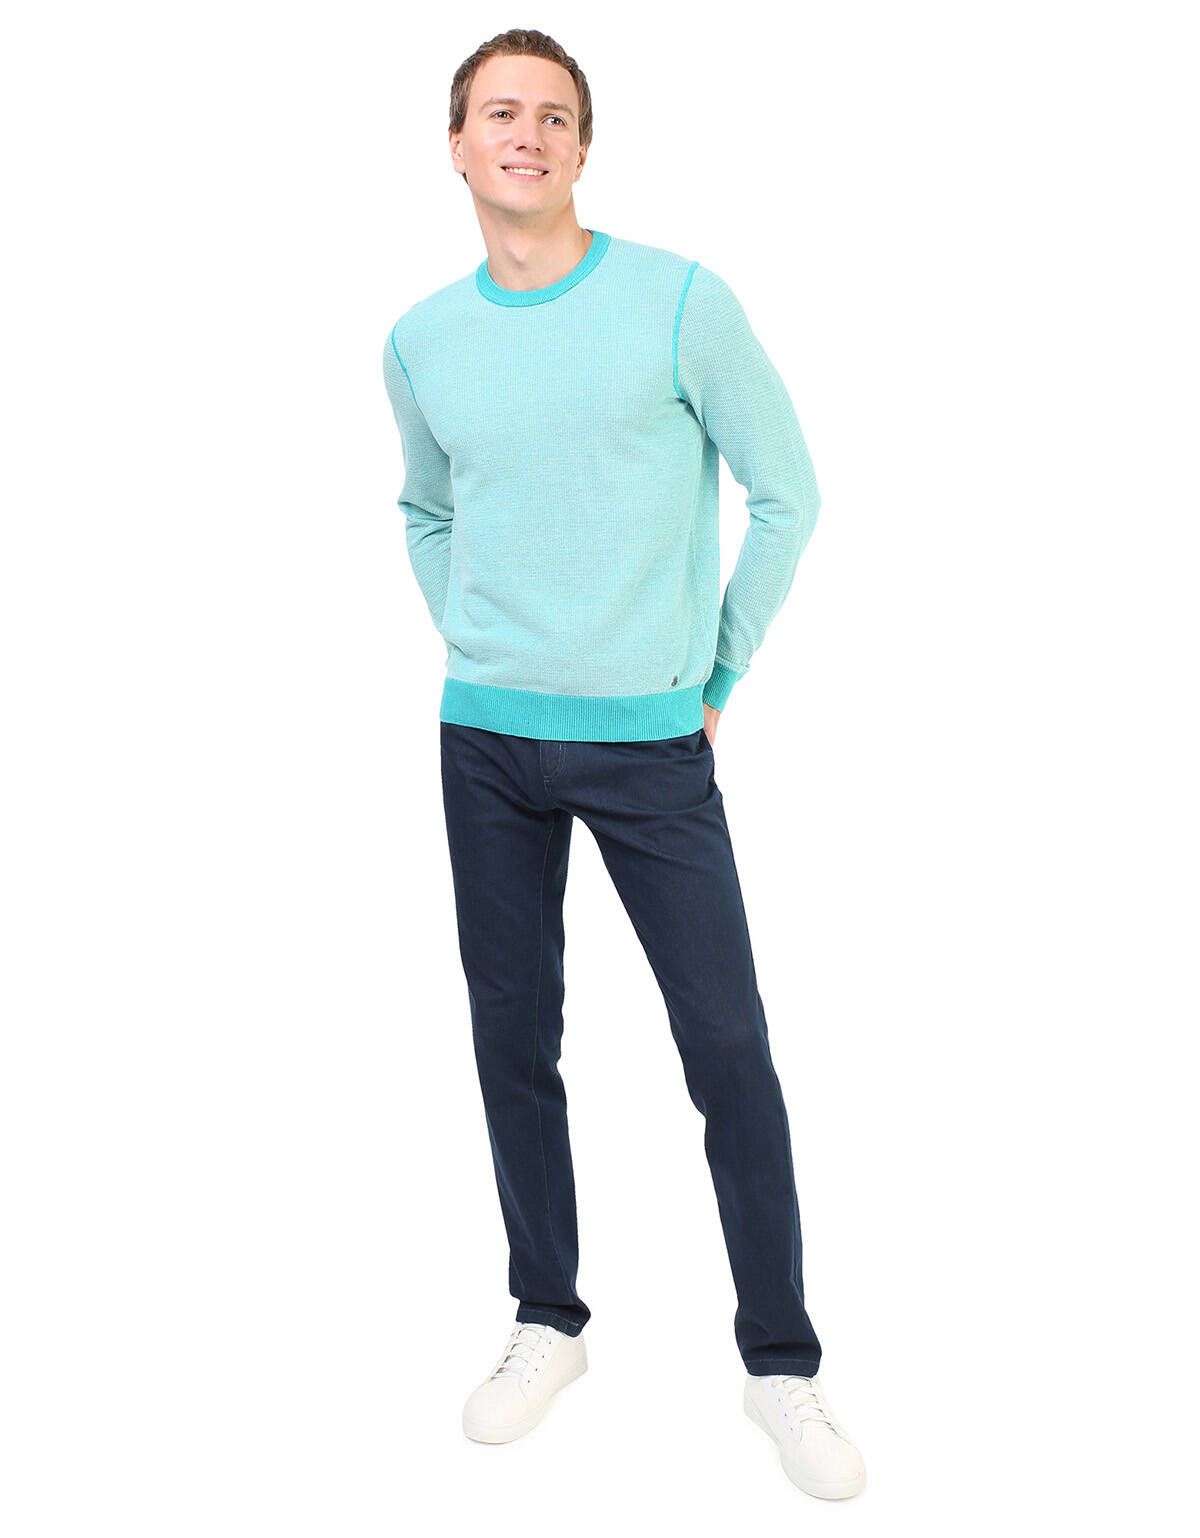 Пуловер с круглым вырезом Marvelis бирюзовый | купить в интернет-магазине Olymp-Men